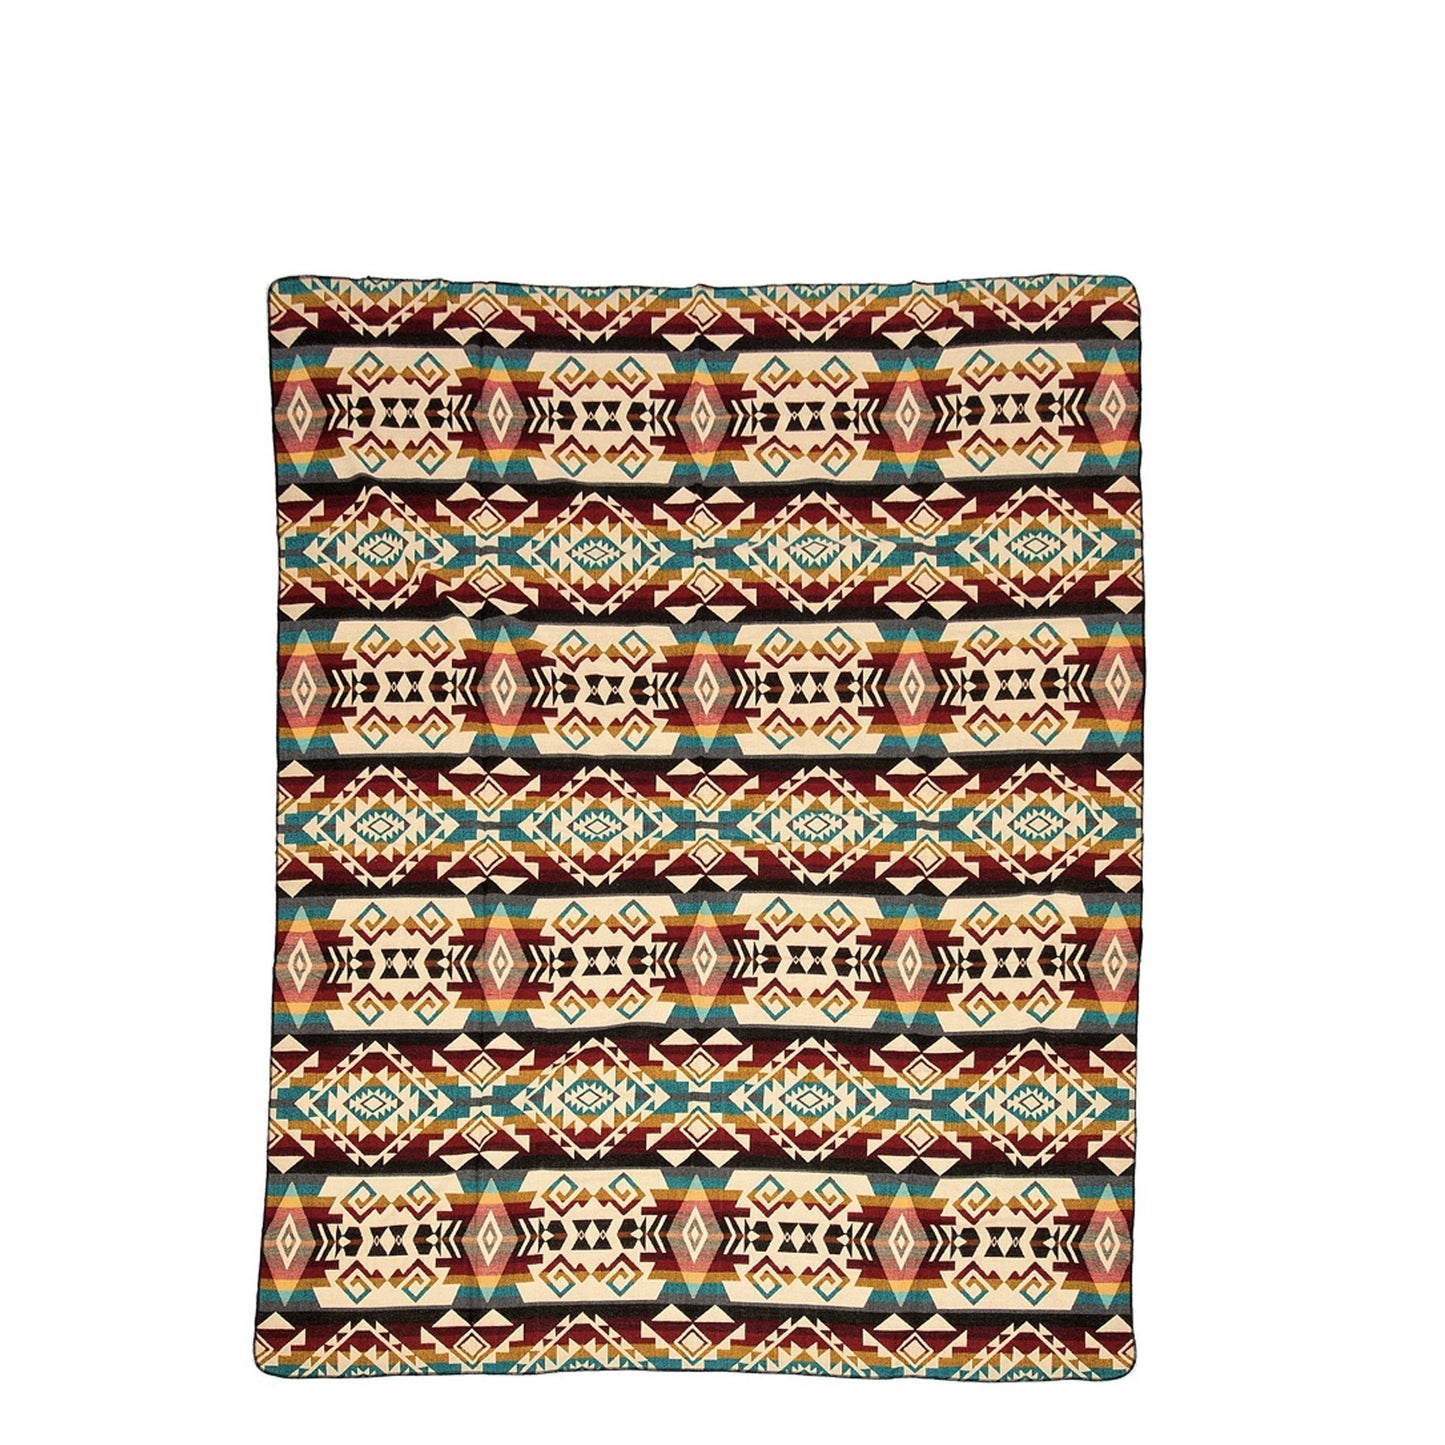 Authentische Chimborazo Decke aus bunter Alpaka Wolle - 110 x 205 cm - Vandeley